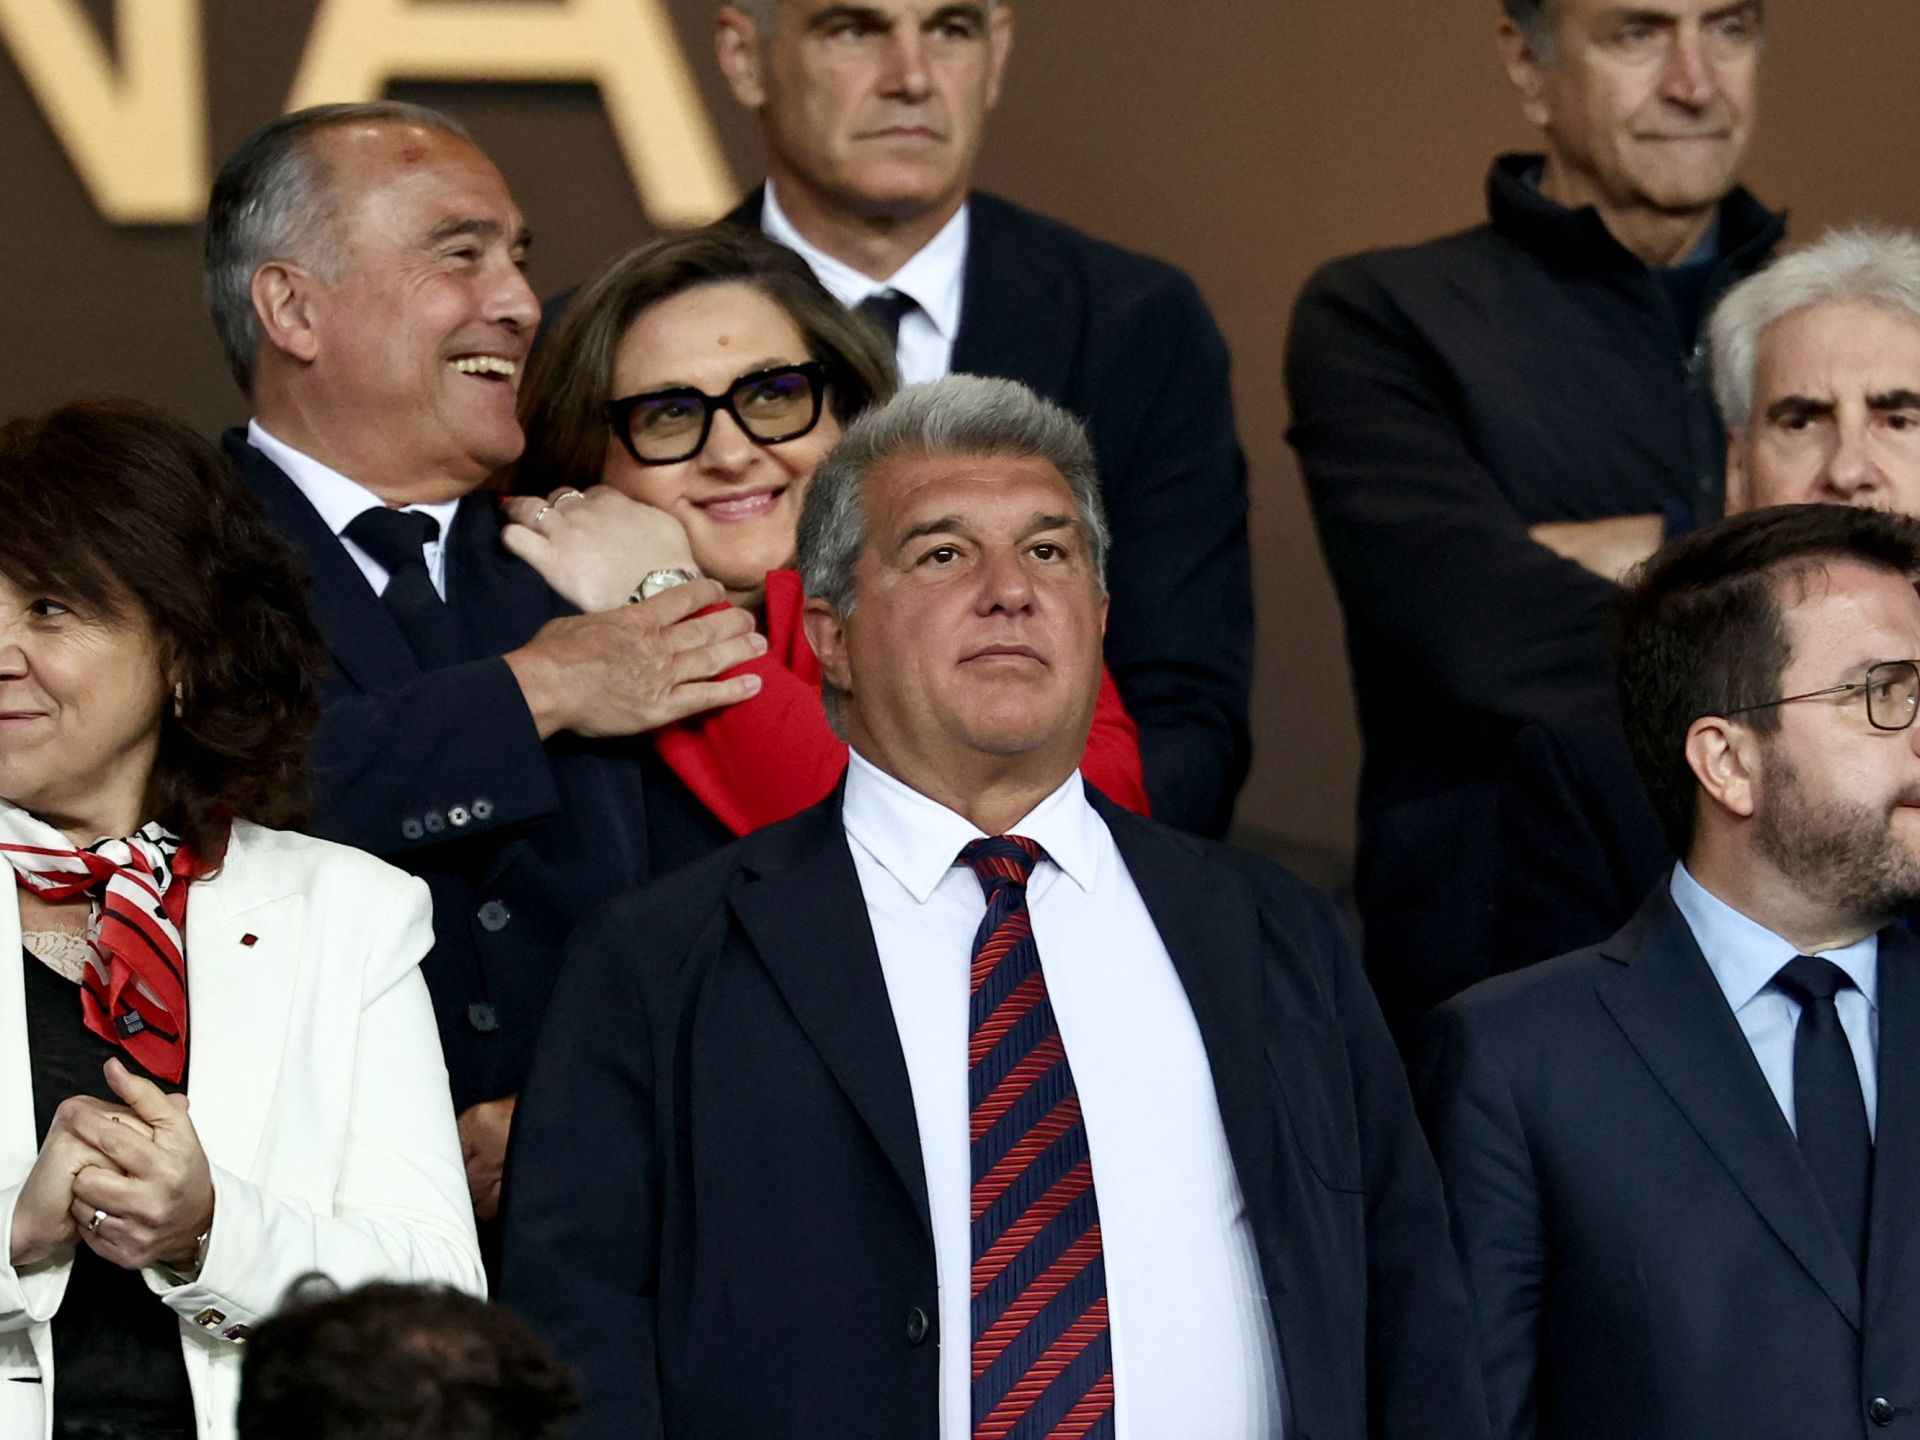 لابورتا سيطالب بإعادة الكلاسيكو بين ريال مدريد وبرشلونة | رياضة – البوكس نيوز